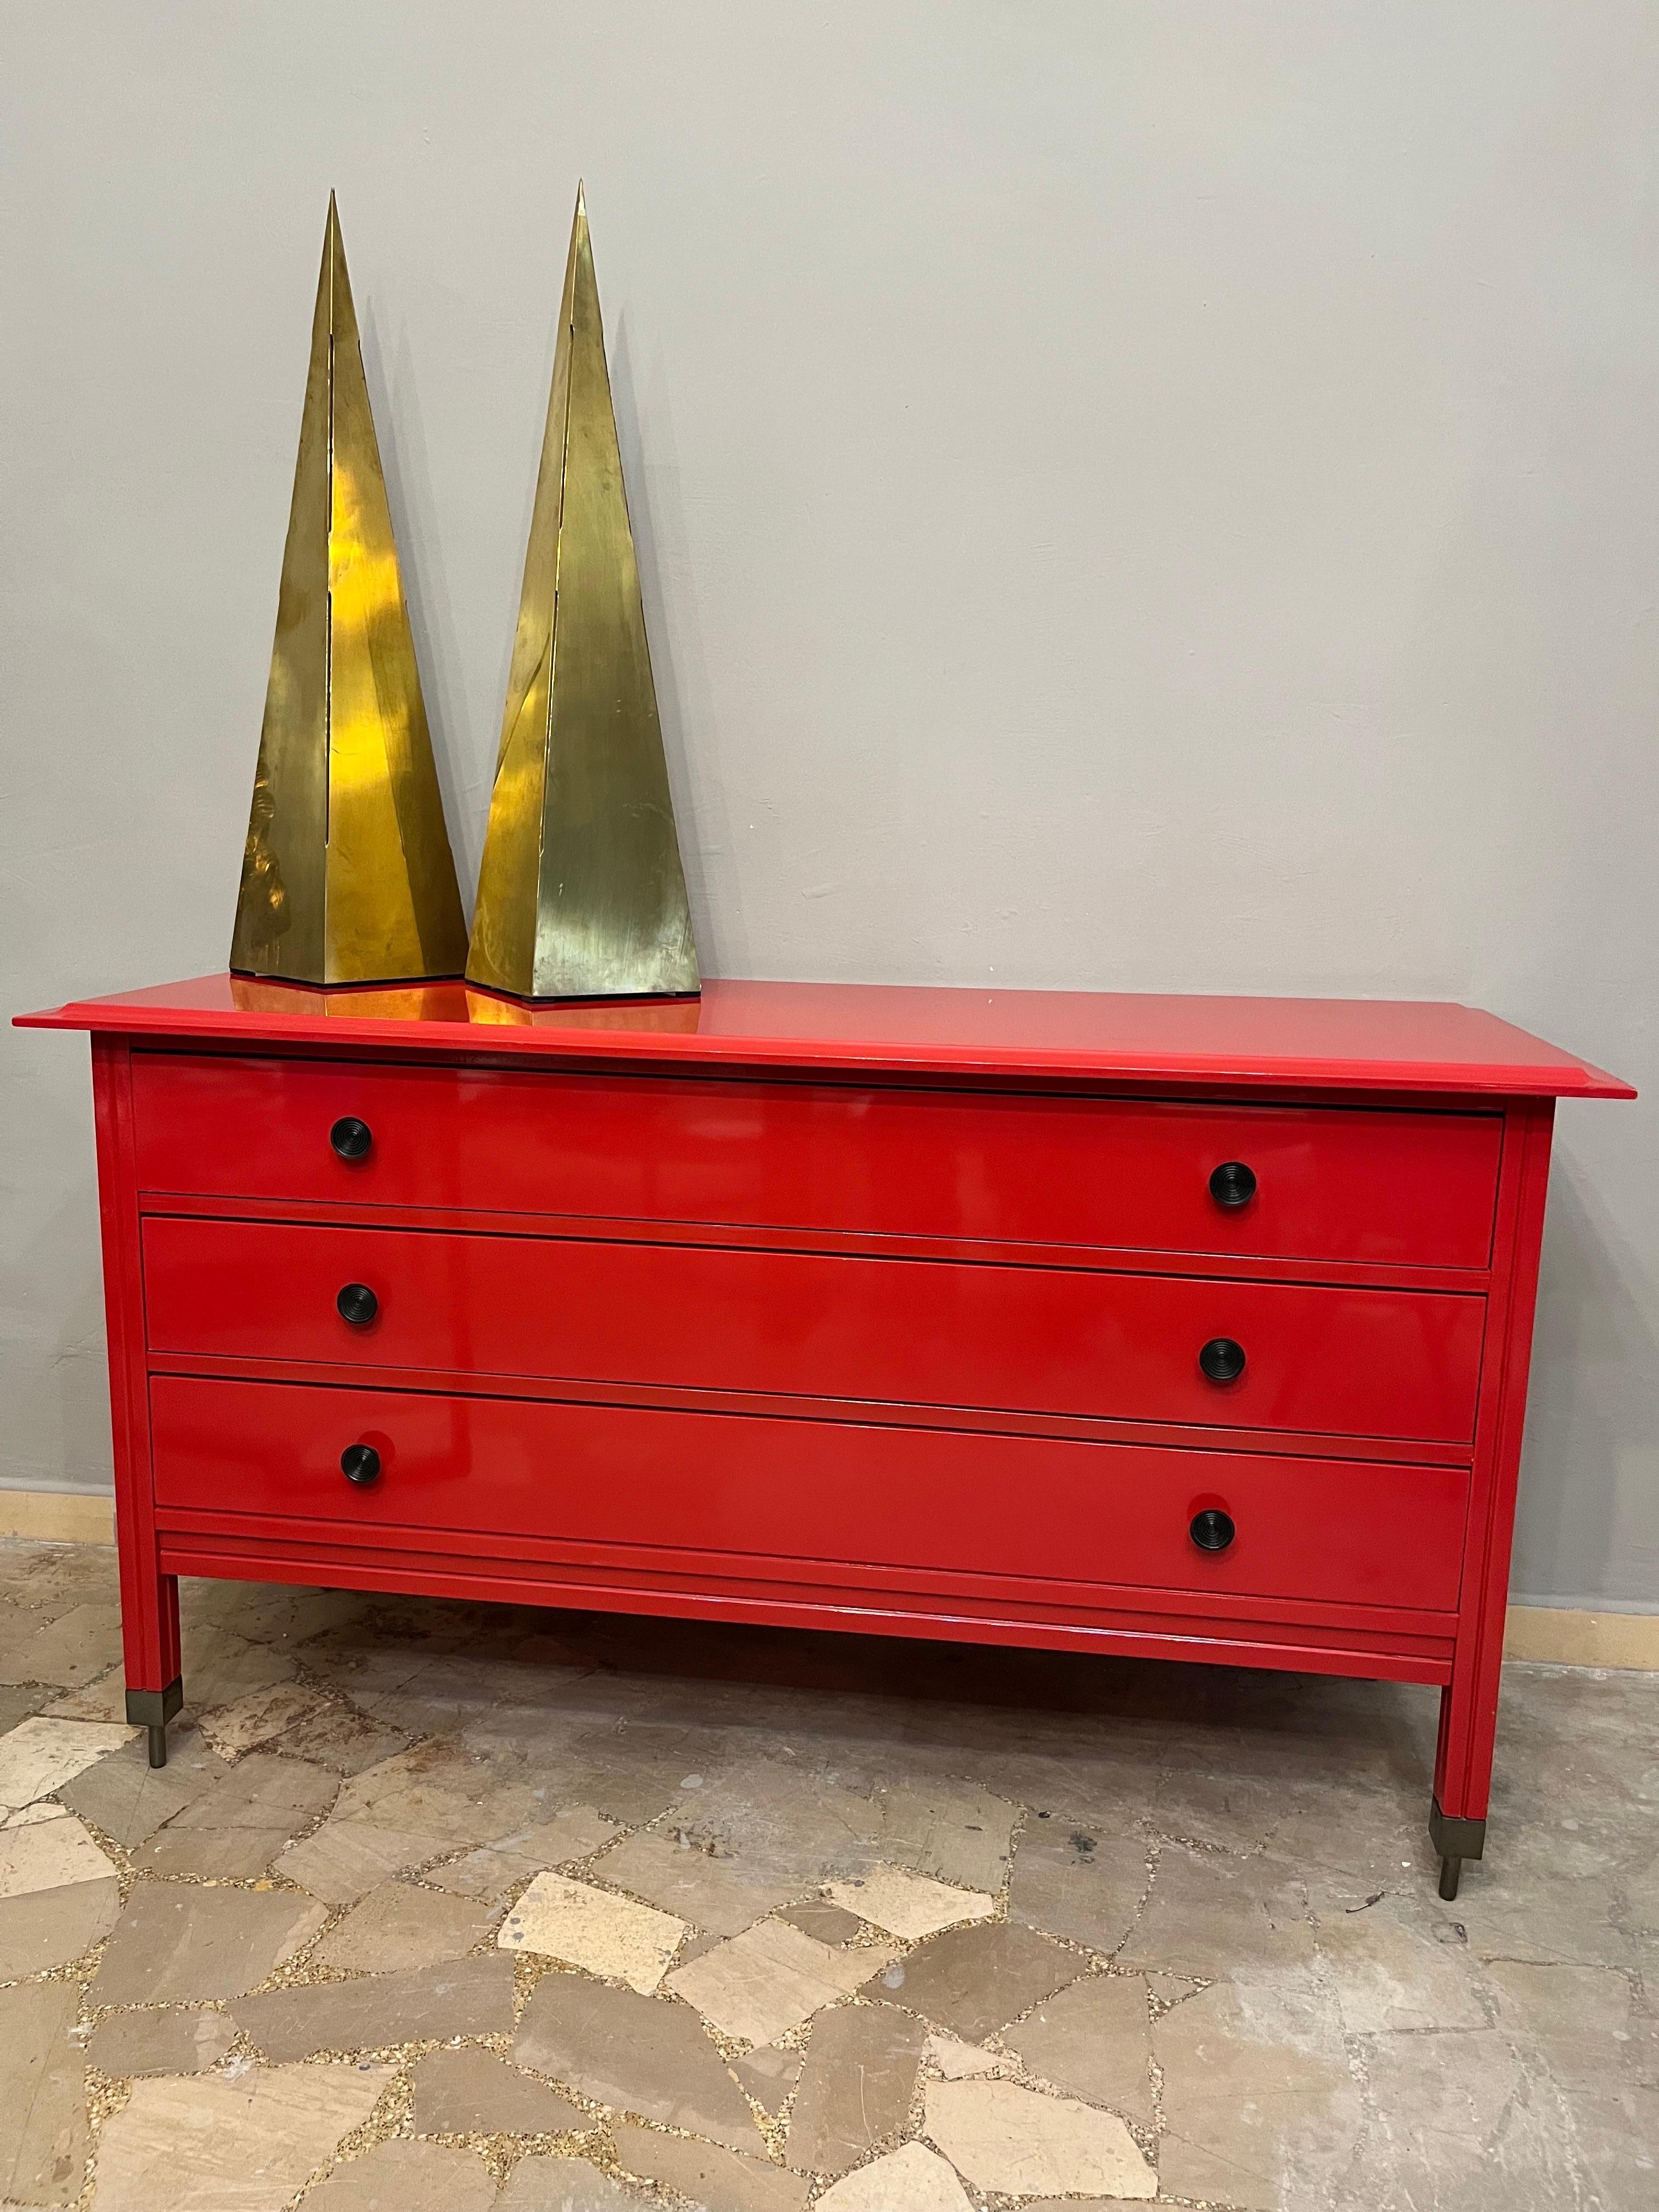 Cassettiera rossa in legno di Carlo De Carli per Sormani, anni '60 -Top Design- In Good Condition For Sale In Foggia, FG